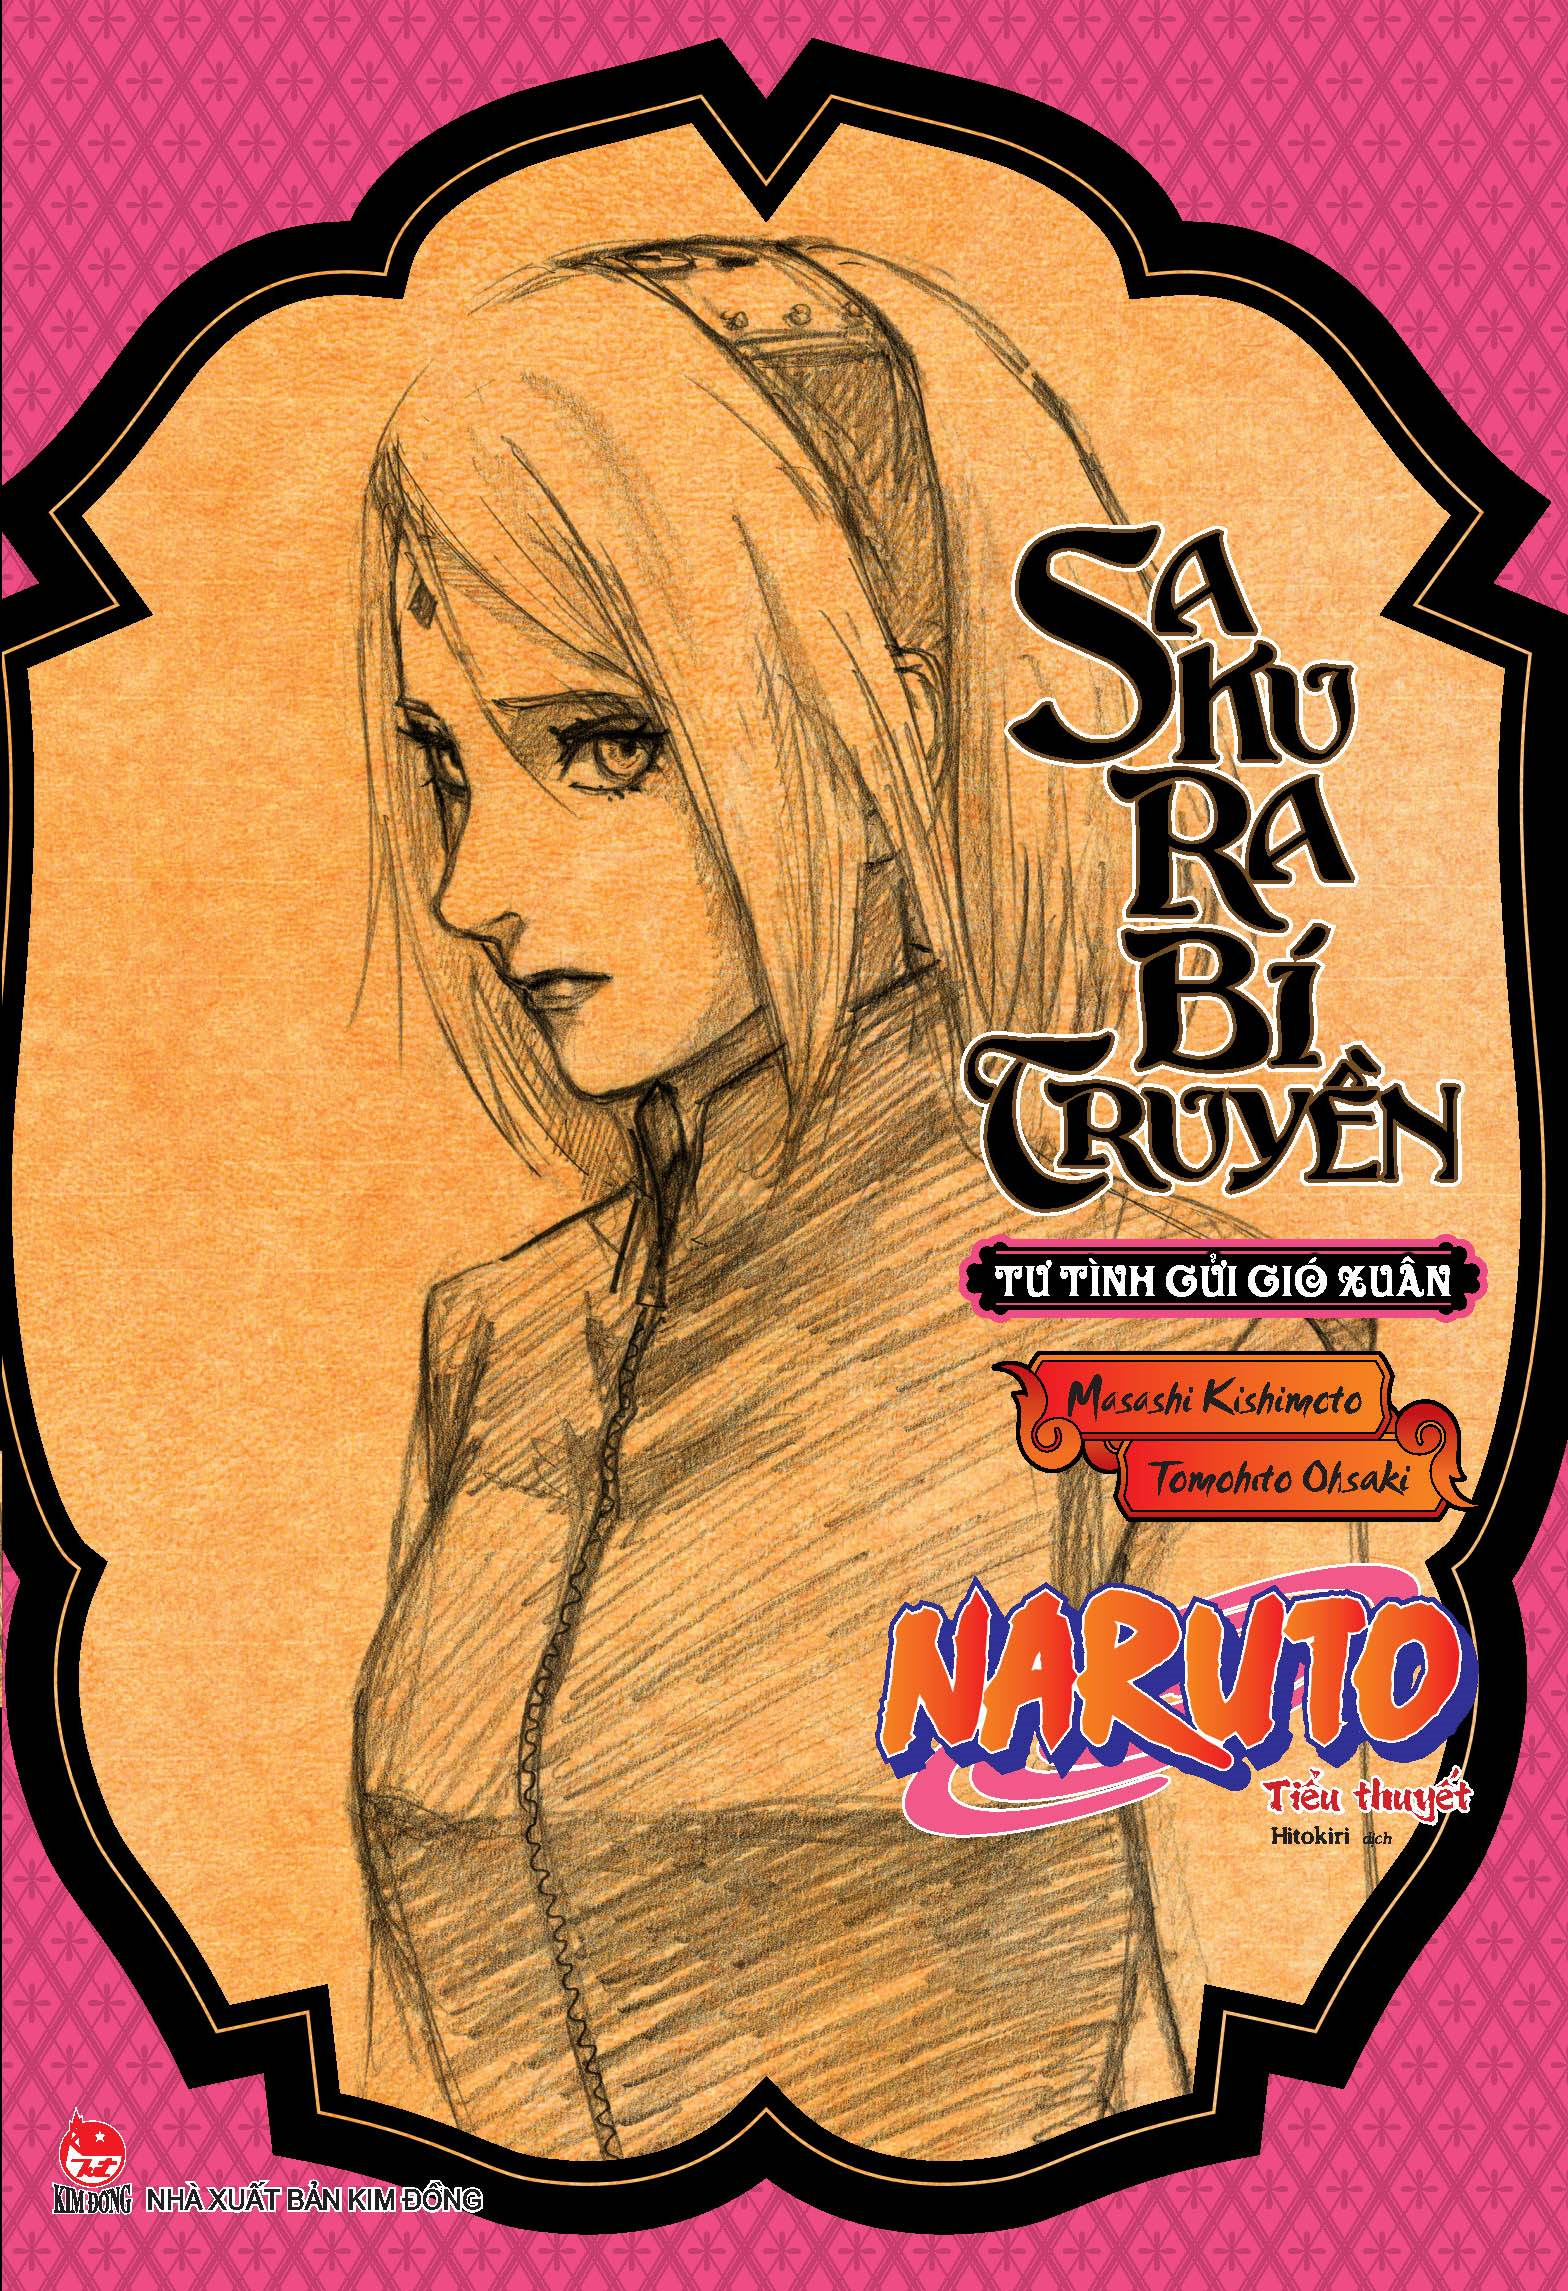 Boxset Tiểu Thuyết Naruto Bí Truyền Bộ 6 Tập PDF